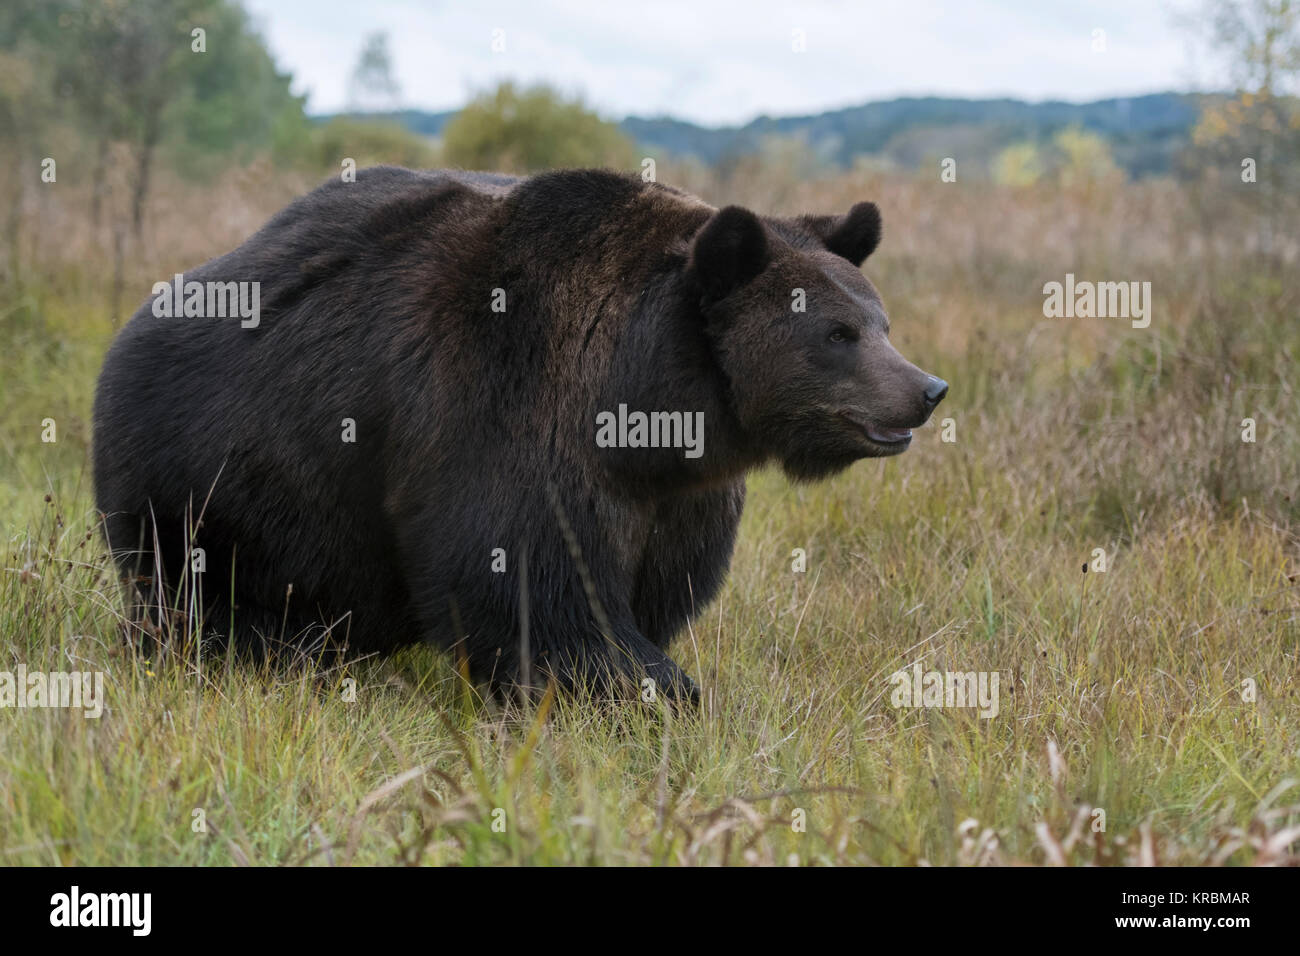 Orso bruno ( Ursus arctos ), potente adulto, ben preparati per l'inverno, camminando attraverso un prato umido, palude, bog vicino al bordo di una foresta, Europa Foto Stock